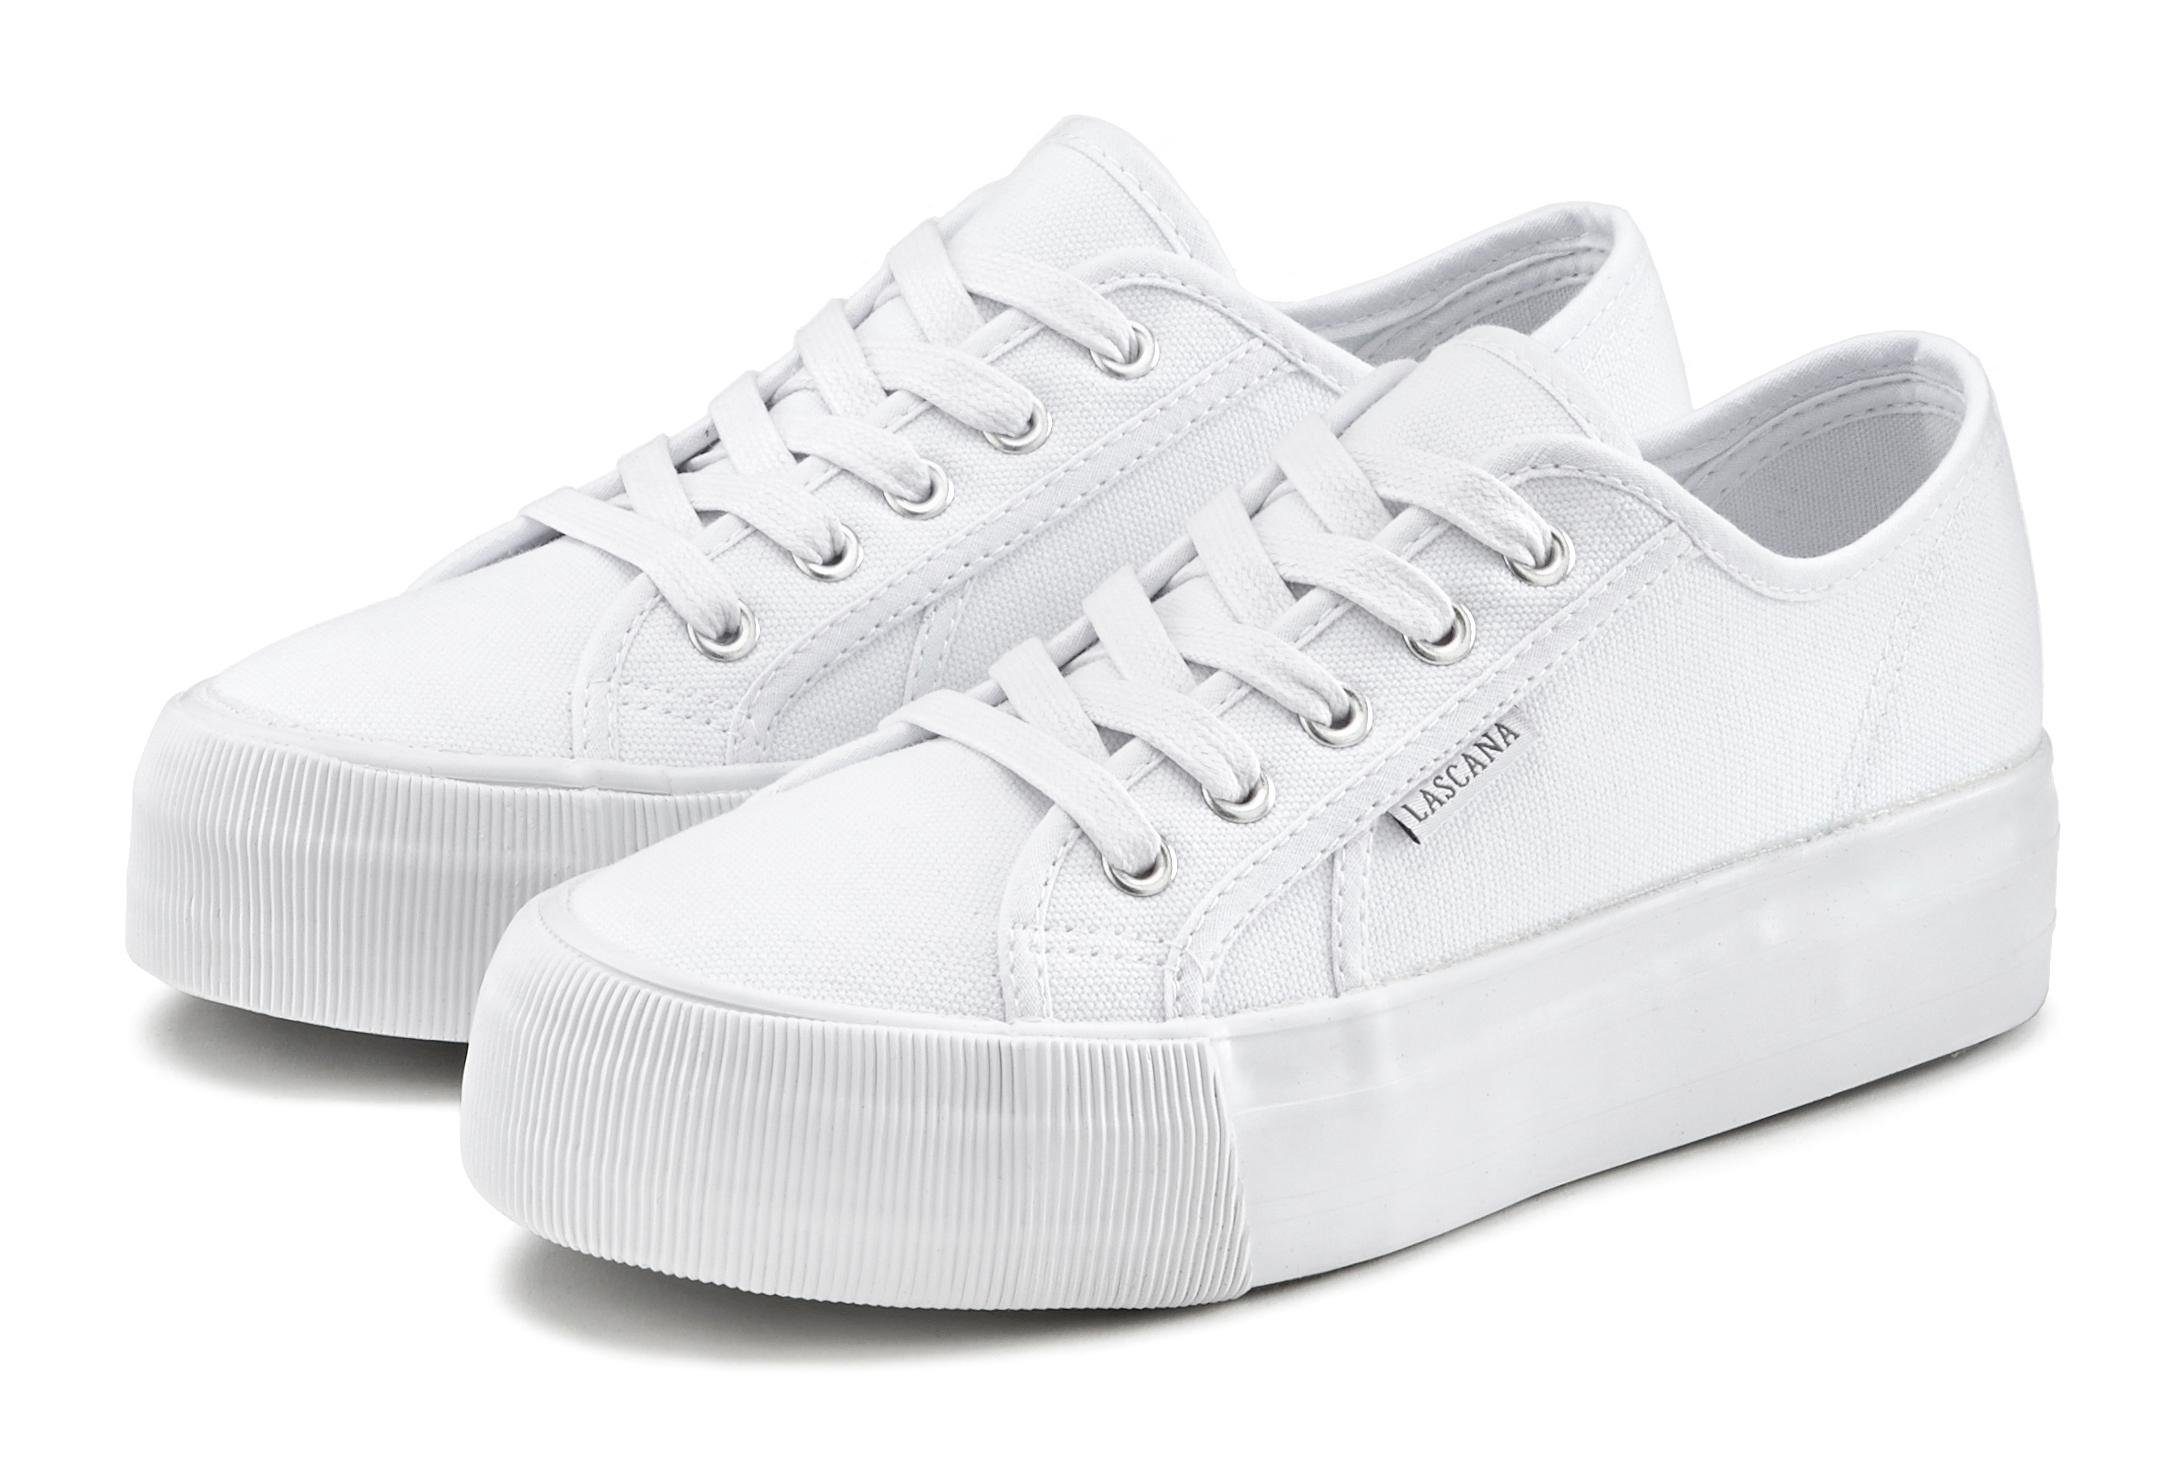 Damen Sneaker in weiß online kaufen | OTTO